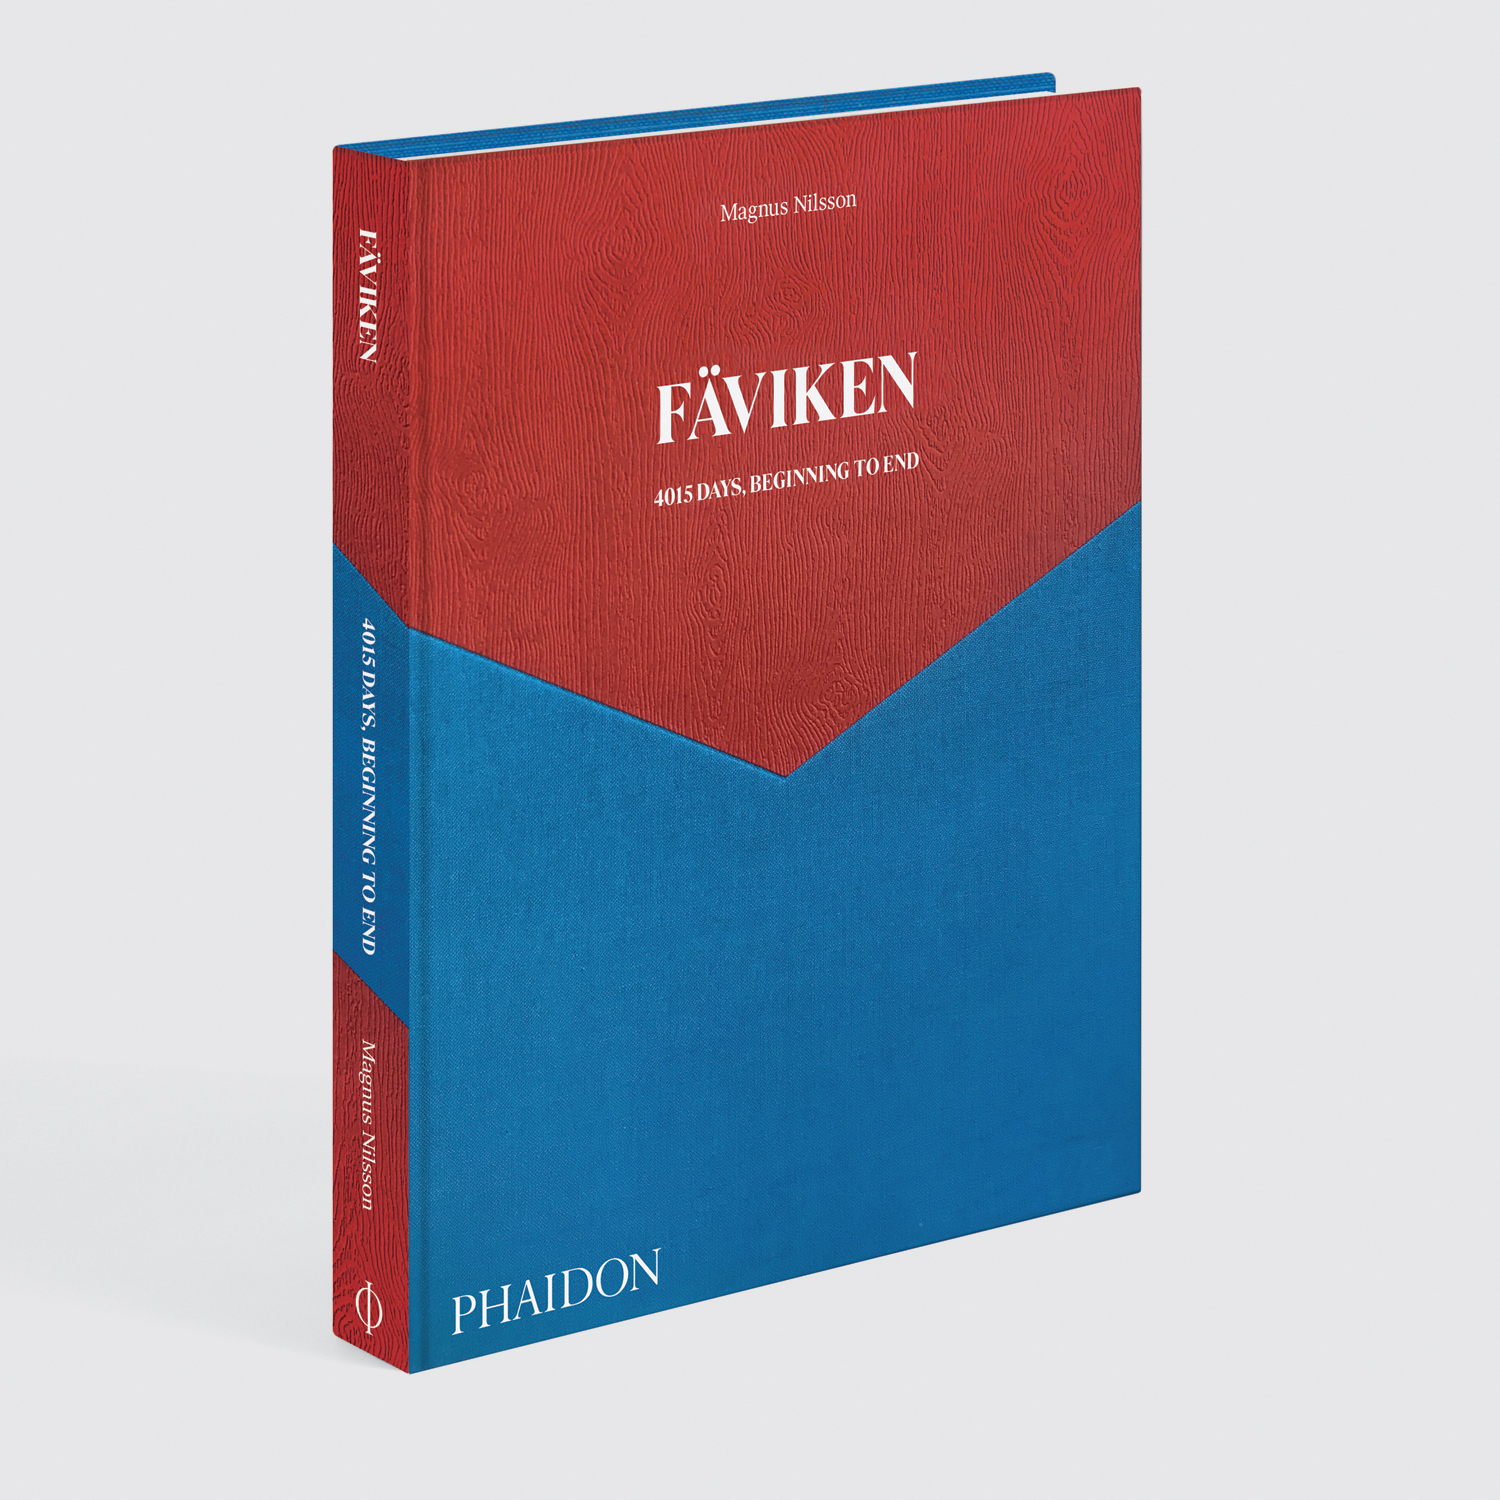 Pentagram reveal the hidden messaging in their Fäviken cover design